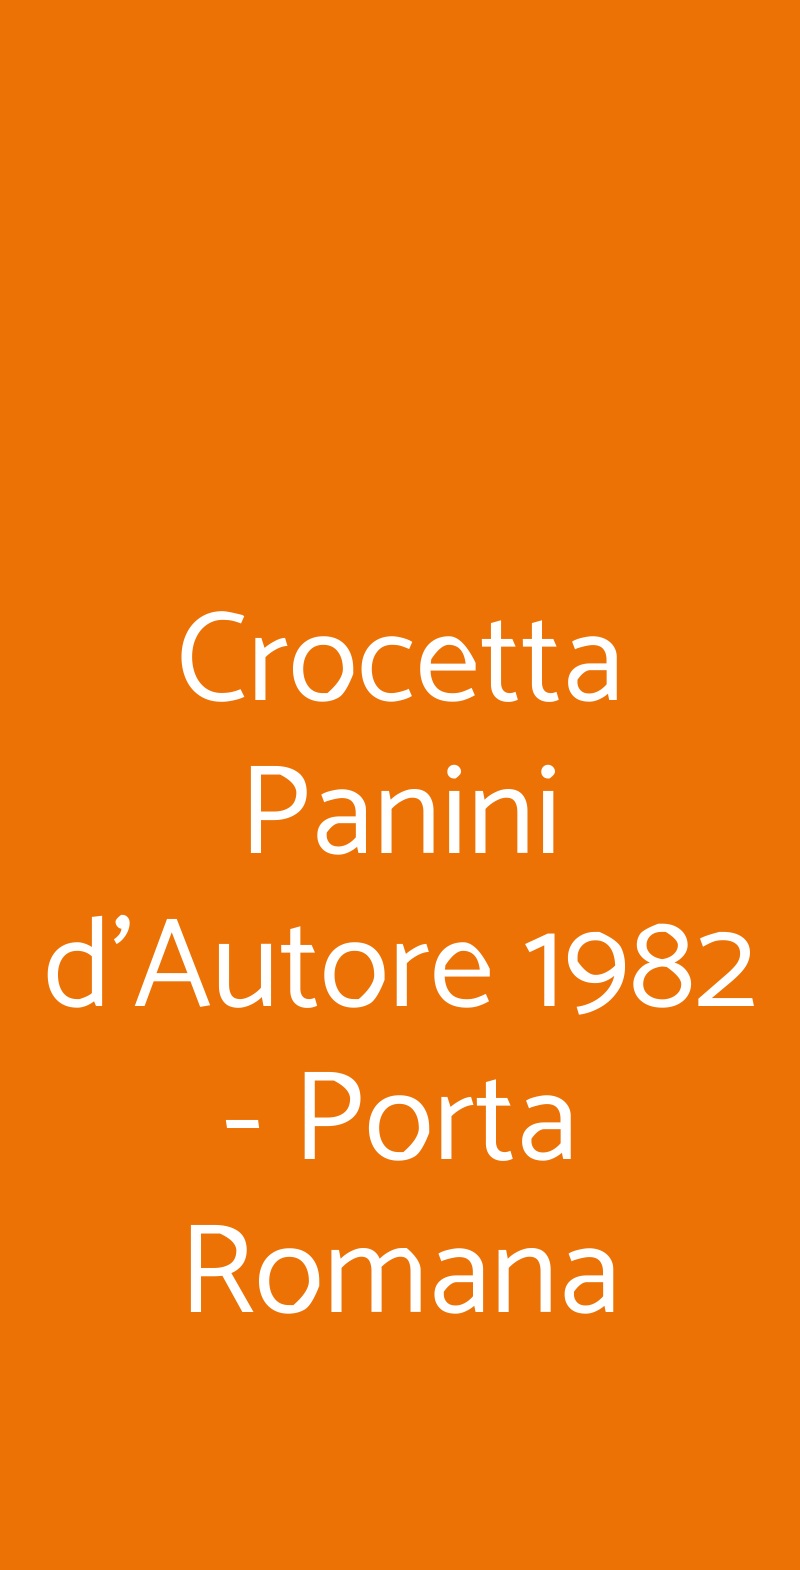 Crocetta Panini d'Autore 1982 - Porta Romana Milano menù 1 pagina